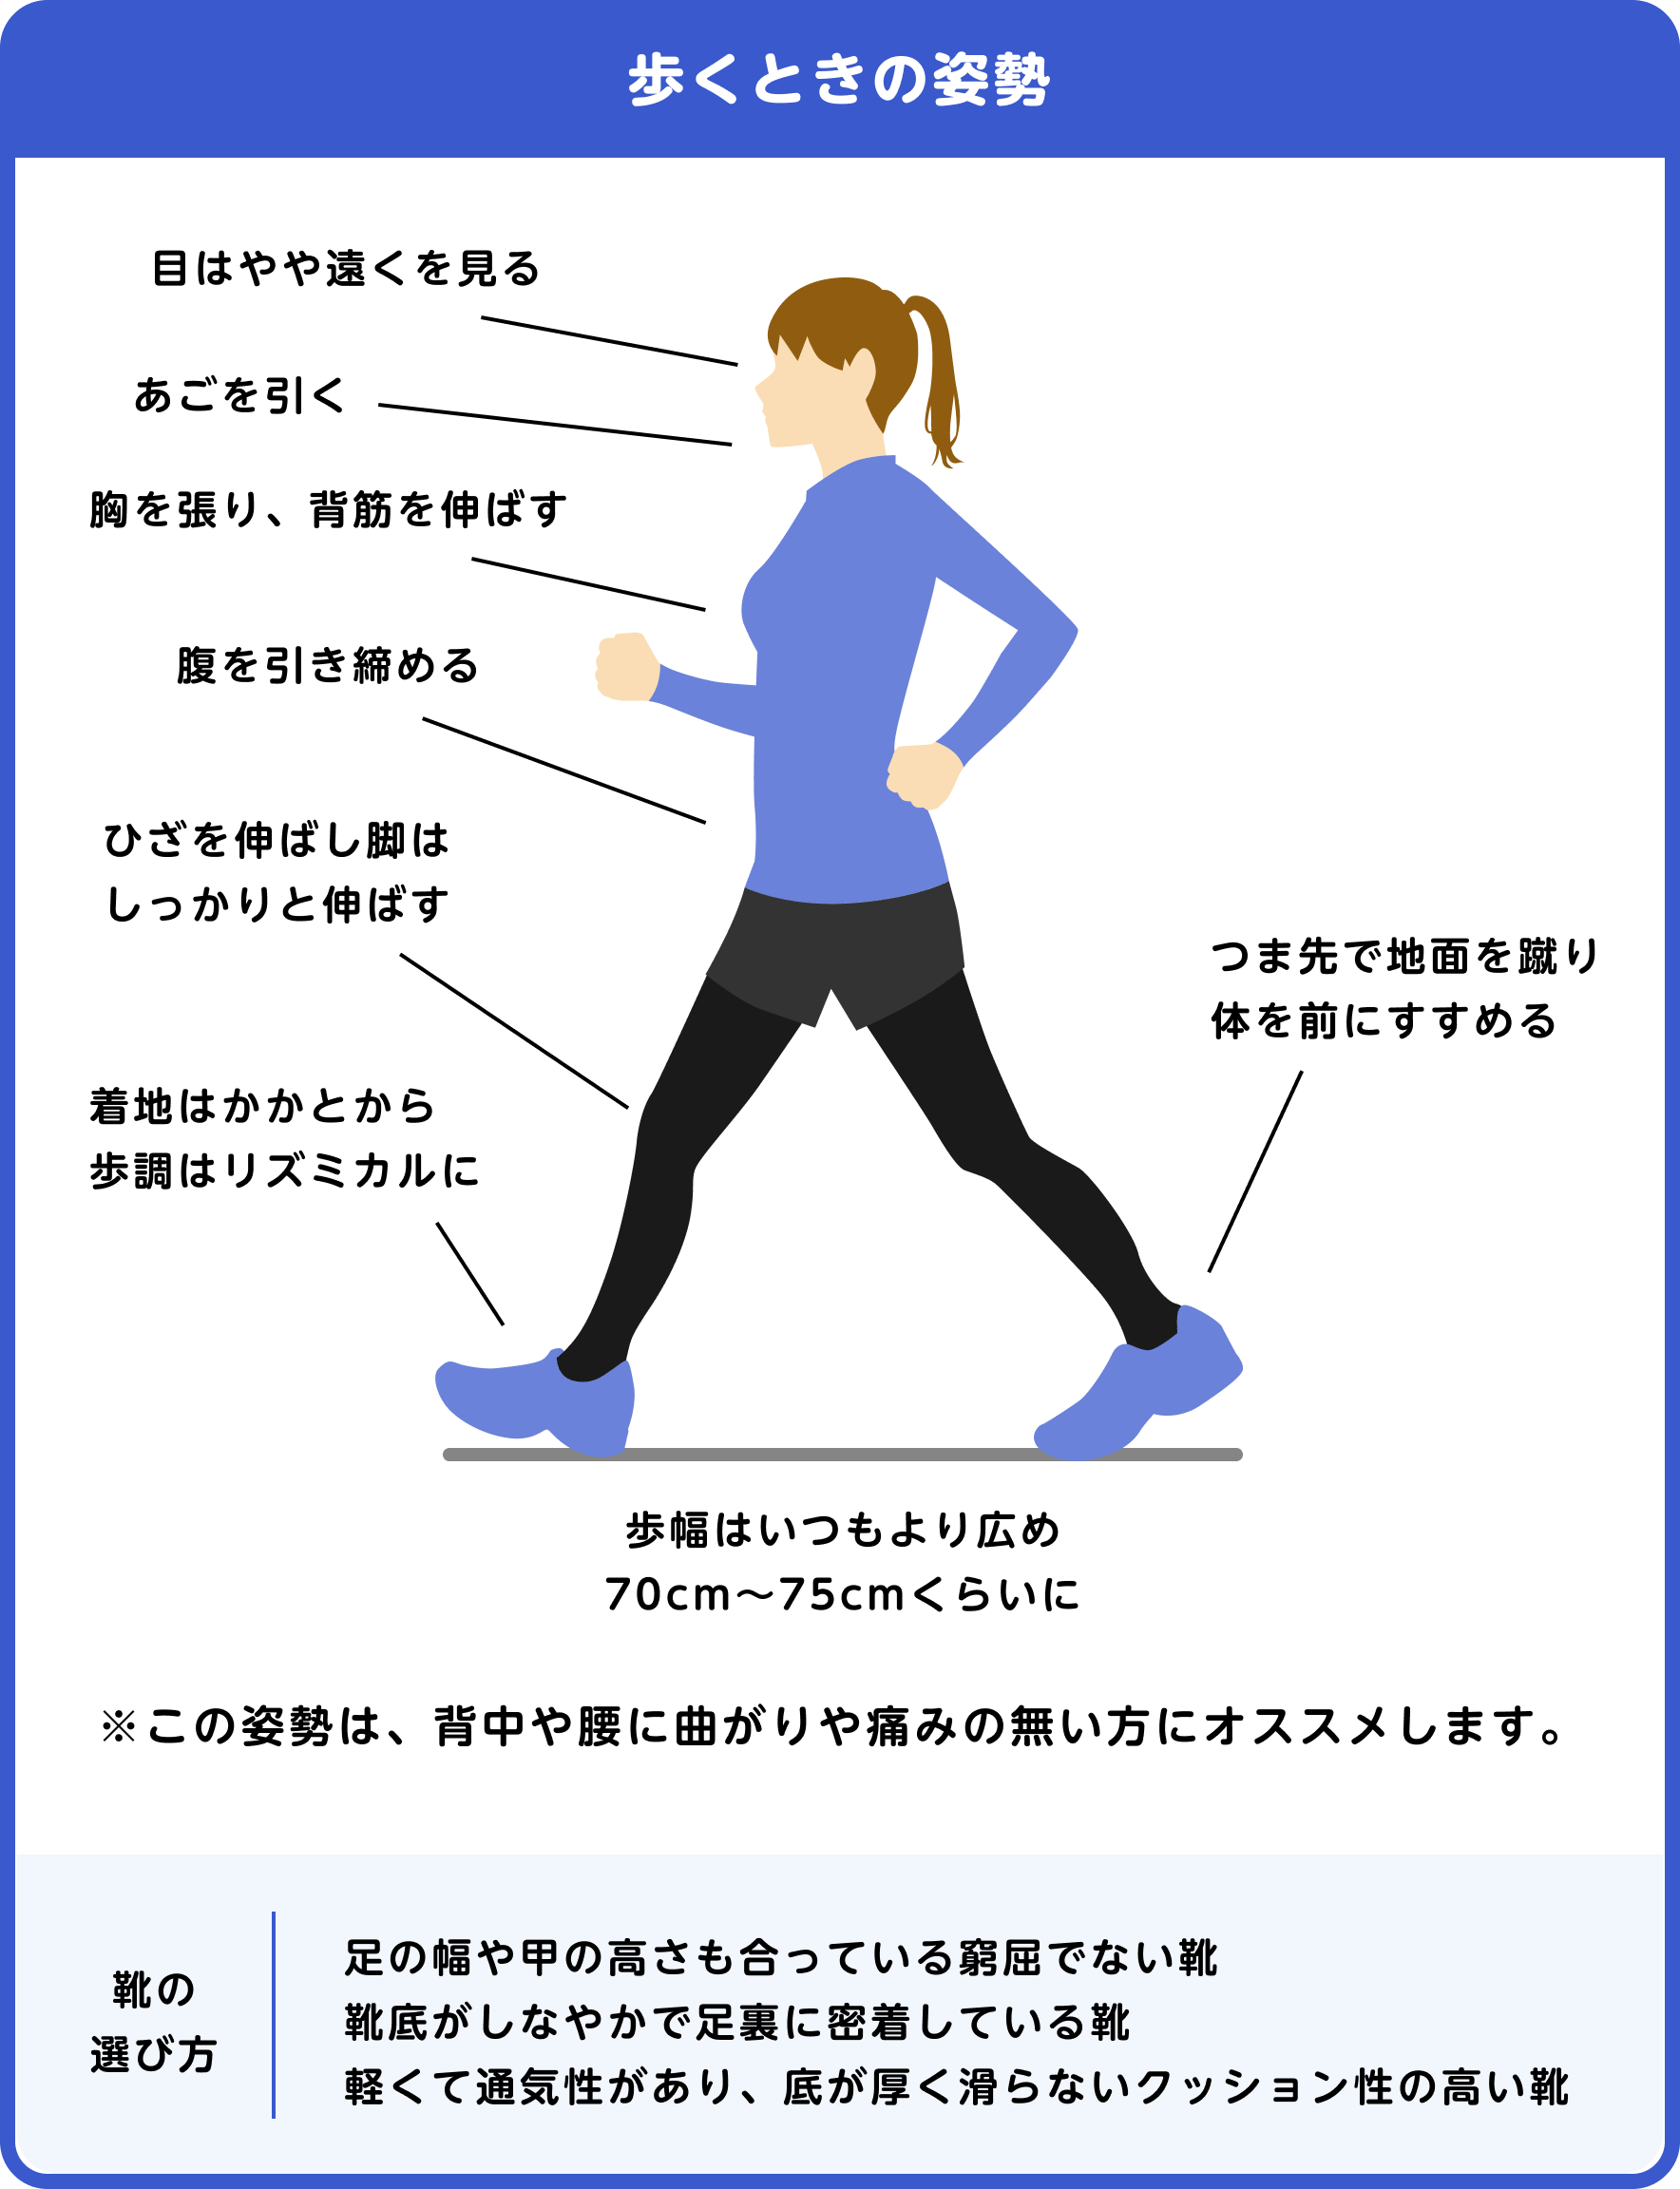 骨粗鬆症財団  https://www.jpof.or.jp/osteoporosis/motion/training.html